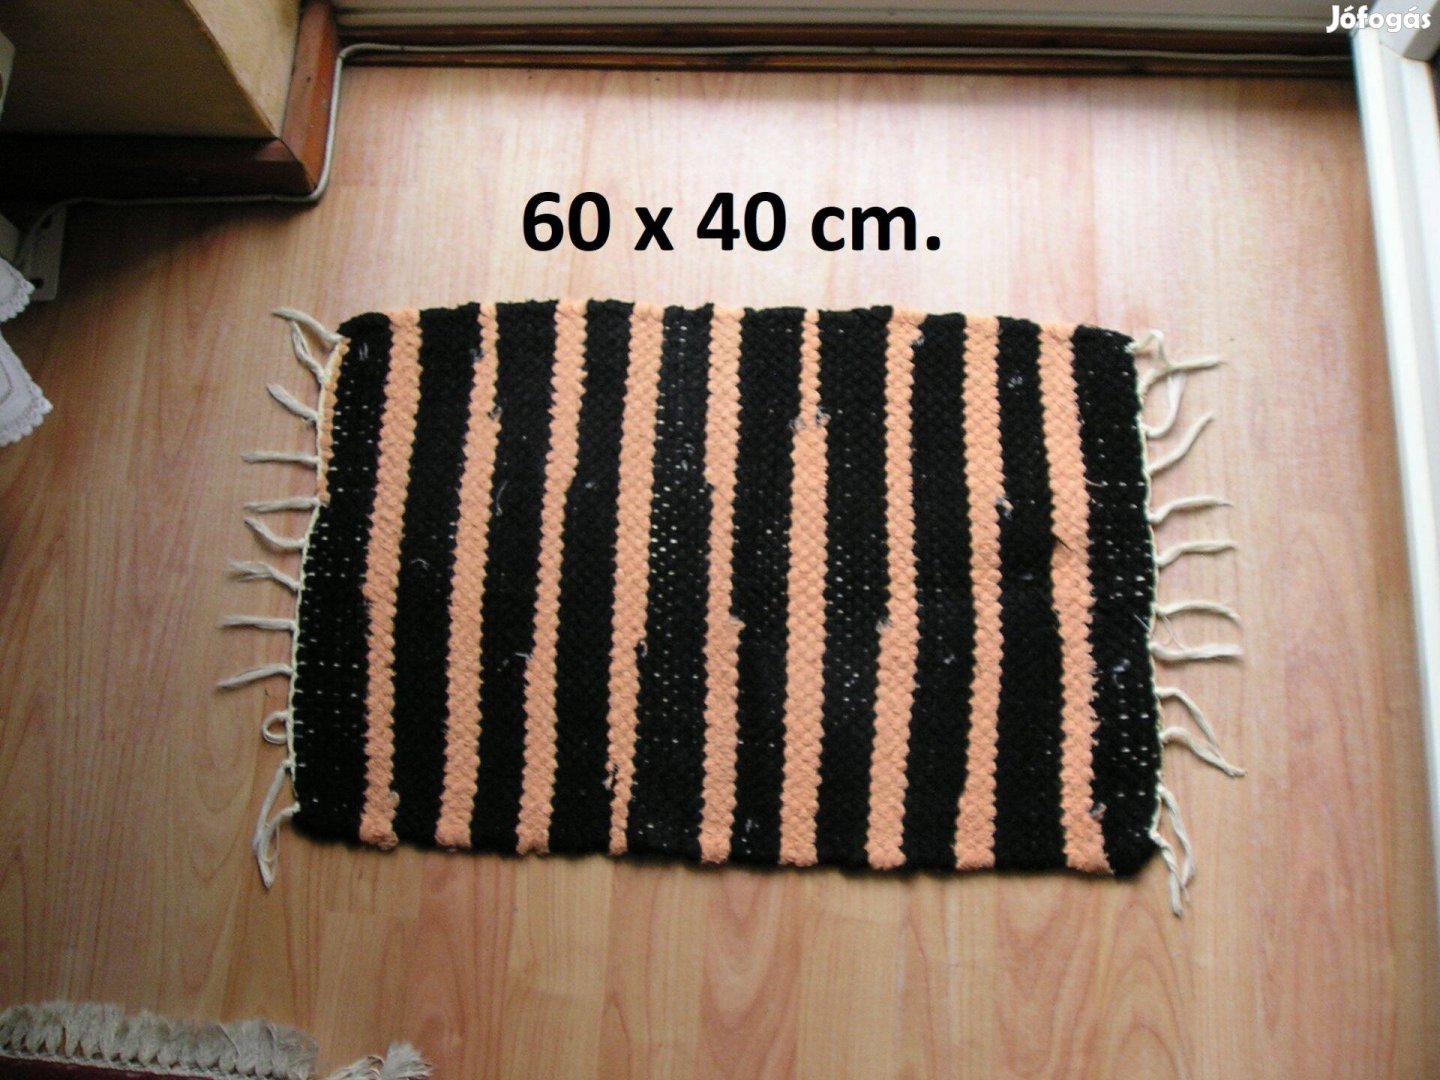 Rongyszőnyeg, kisméretű - 60 x 40 cm